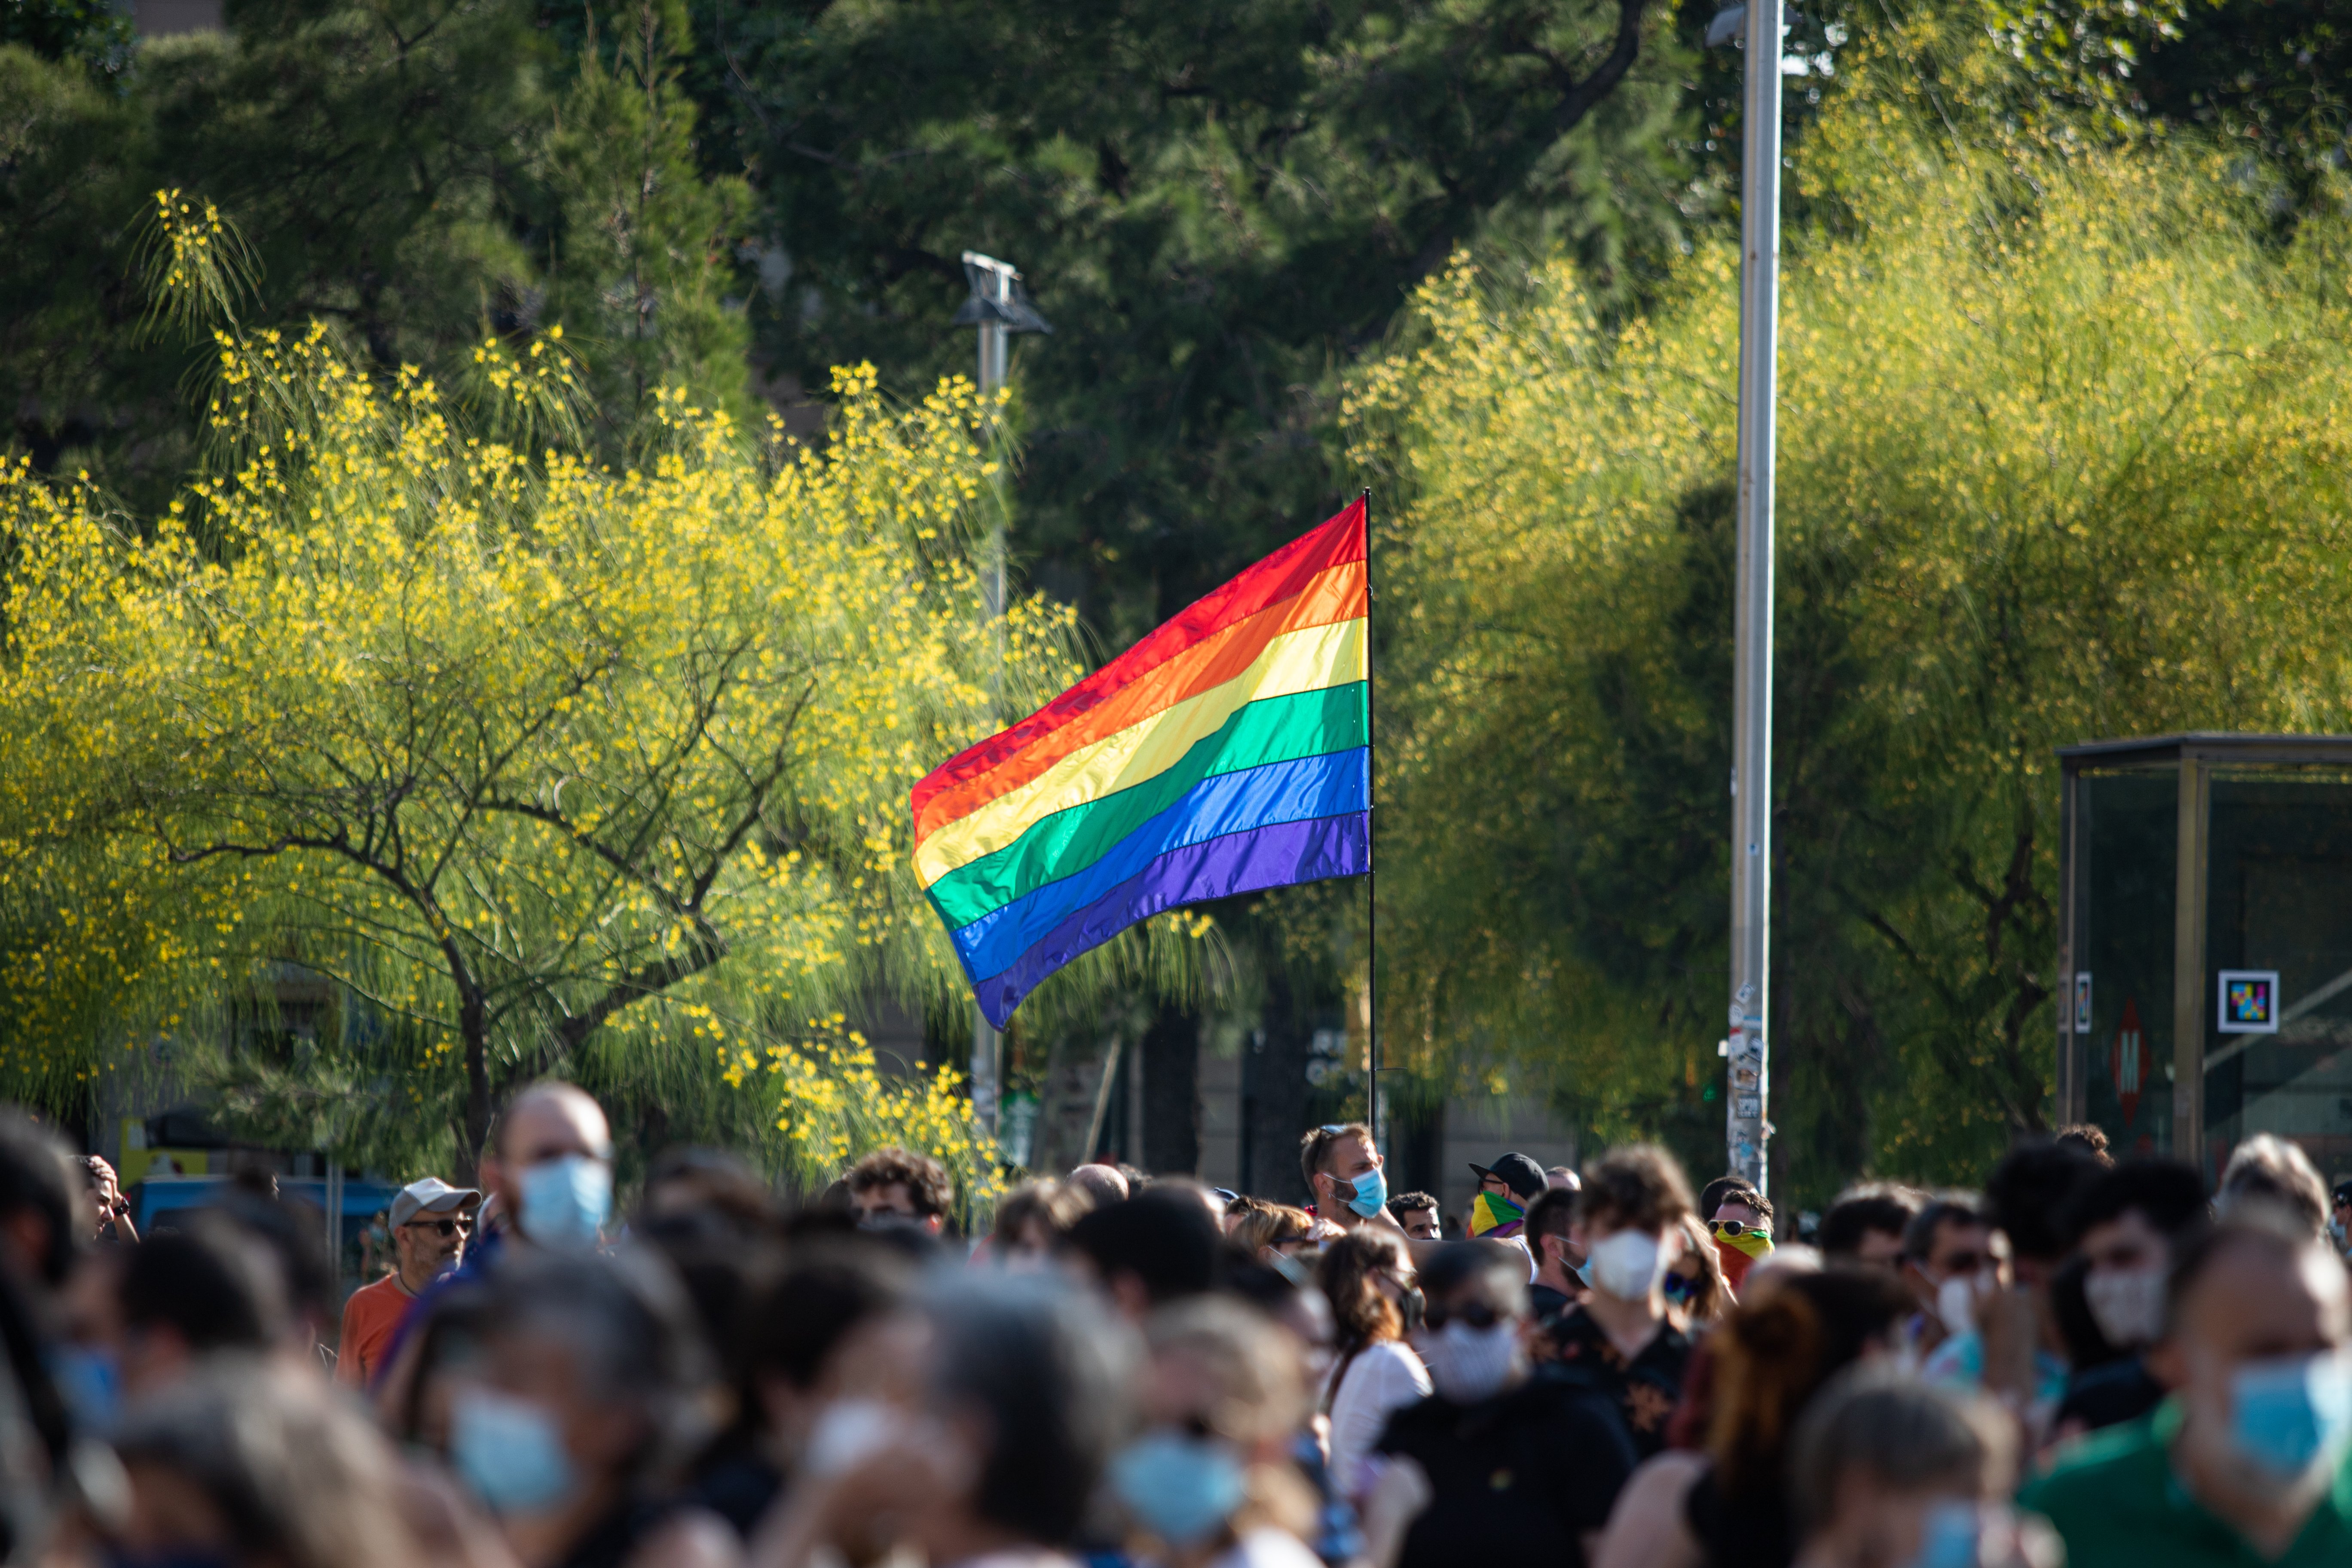 Mes del orgullo LGTBI+ 2021: ¿qué se celebra este año y por qué?